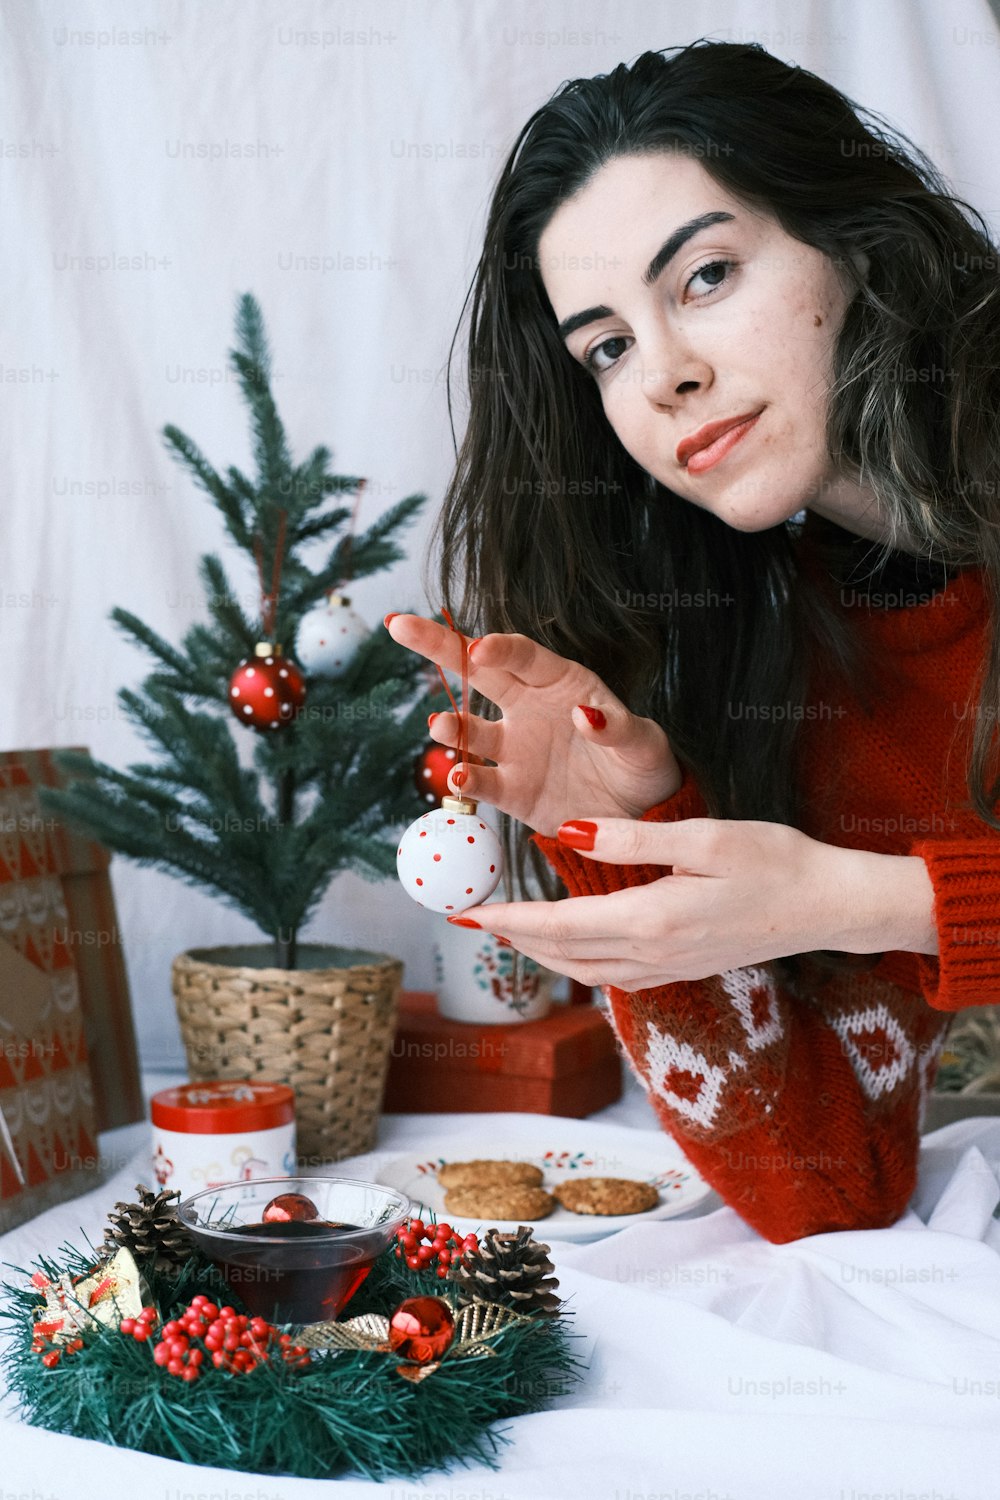 크리스마스 장식품을 들고 빨간 스웨터를 입은 여자